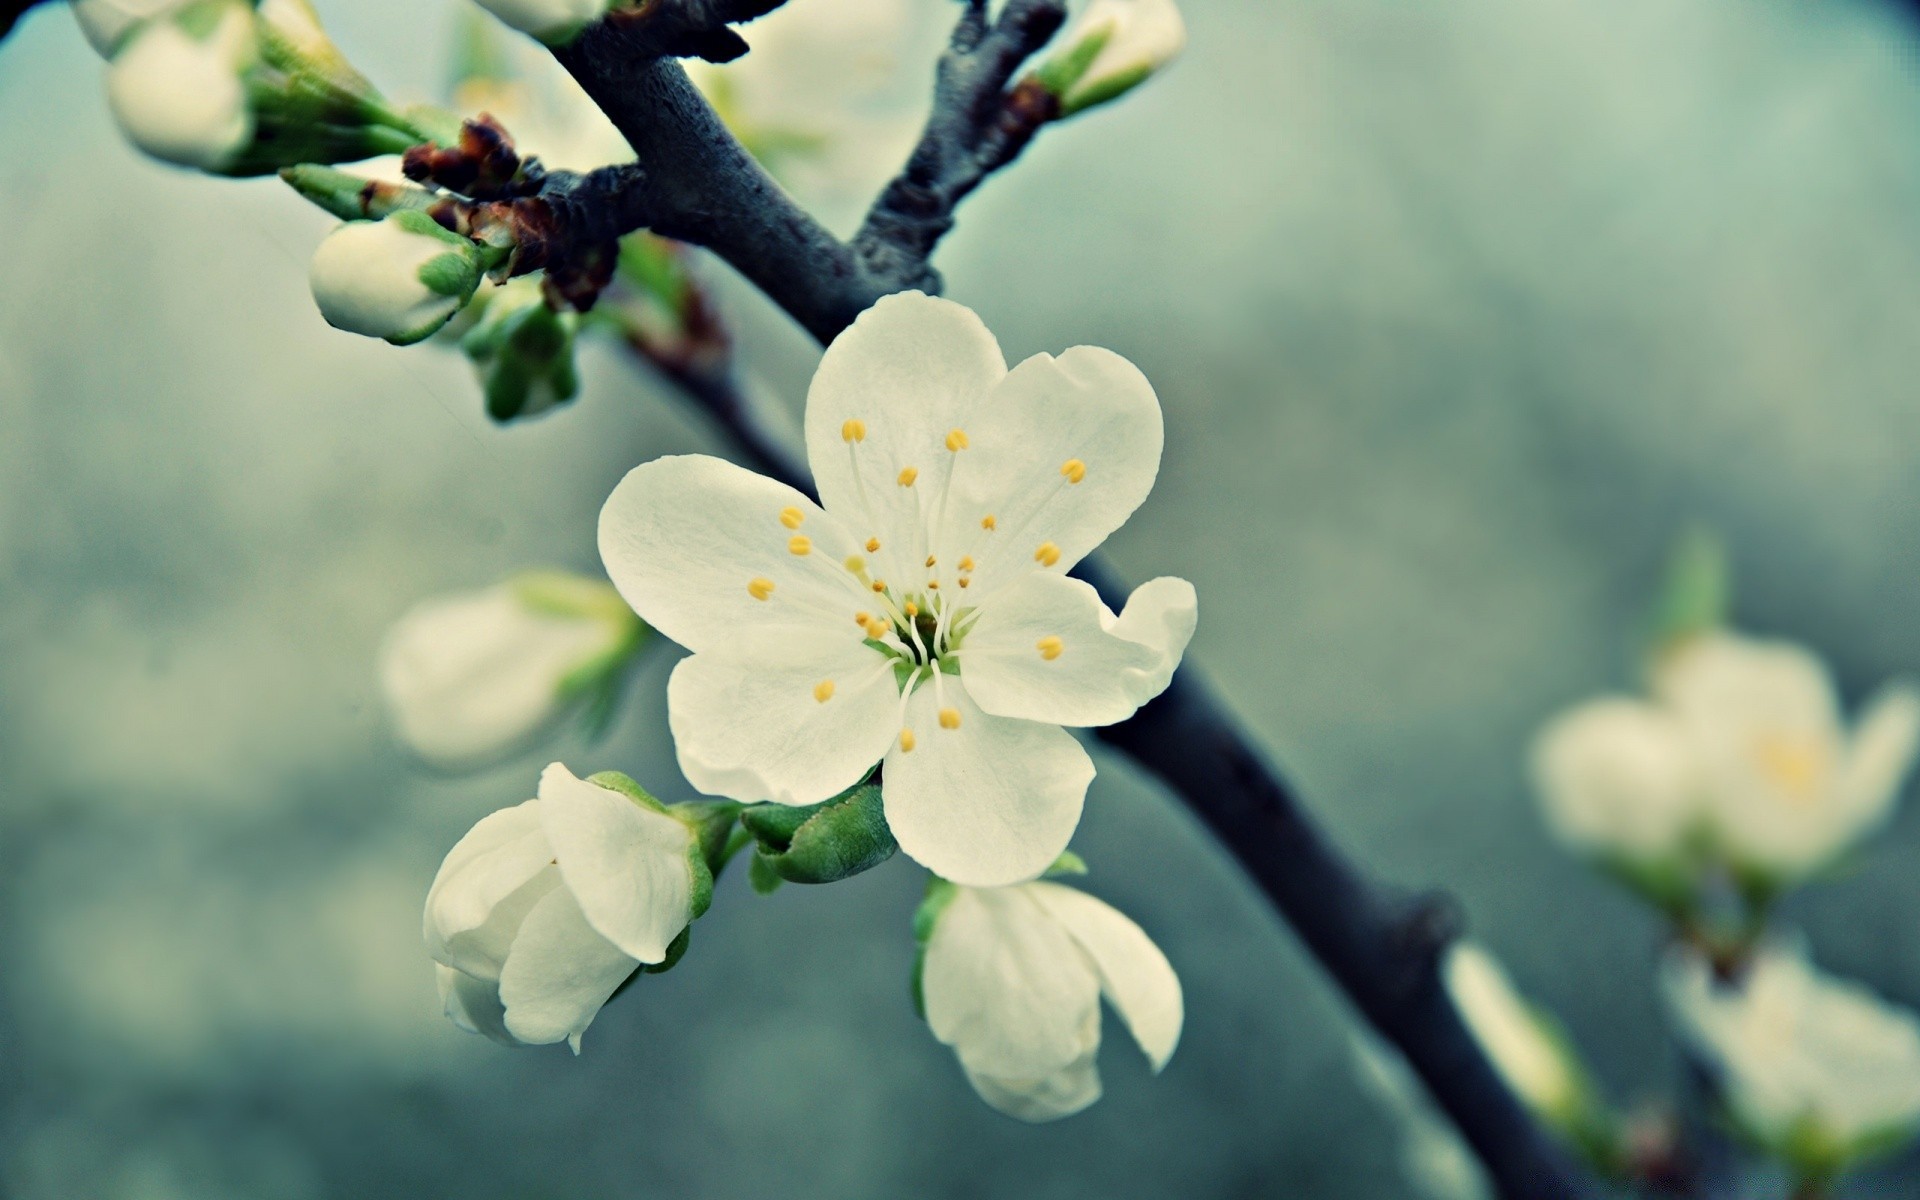 макросъемка цветок природа вишня филиал флора дерево рост яблоко лист блюминг сад дружище на открытом воздухе цветочные лепесток сезон сливы лето нежный